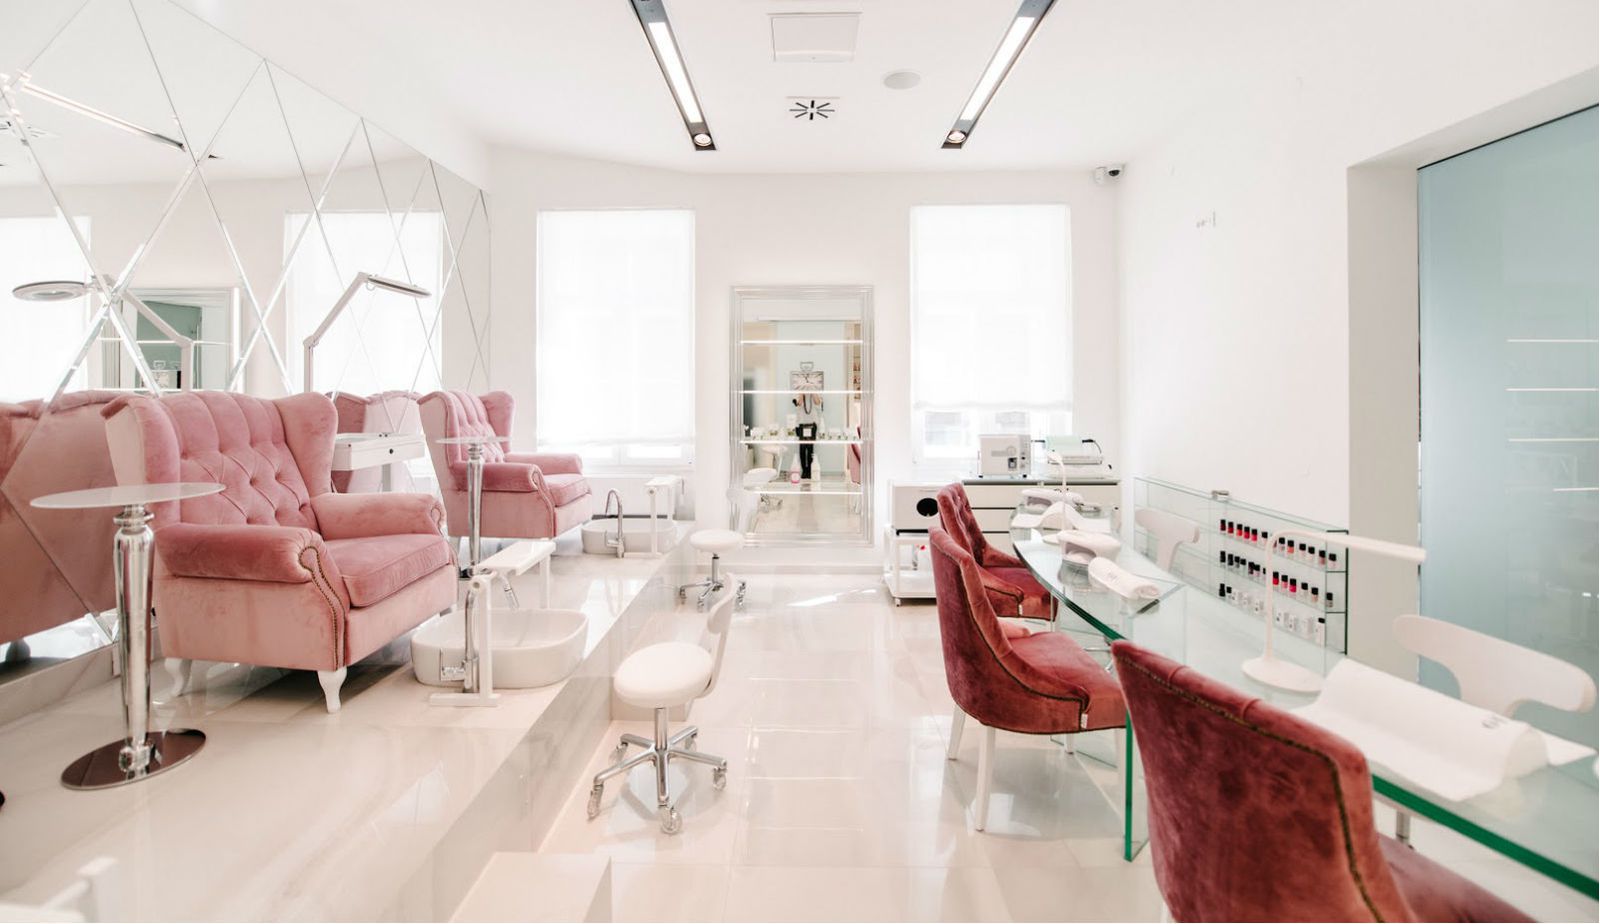 Zagrebački salon ljepote No. 26 Beauty Lounge klijentima nudi usluge uz kav...